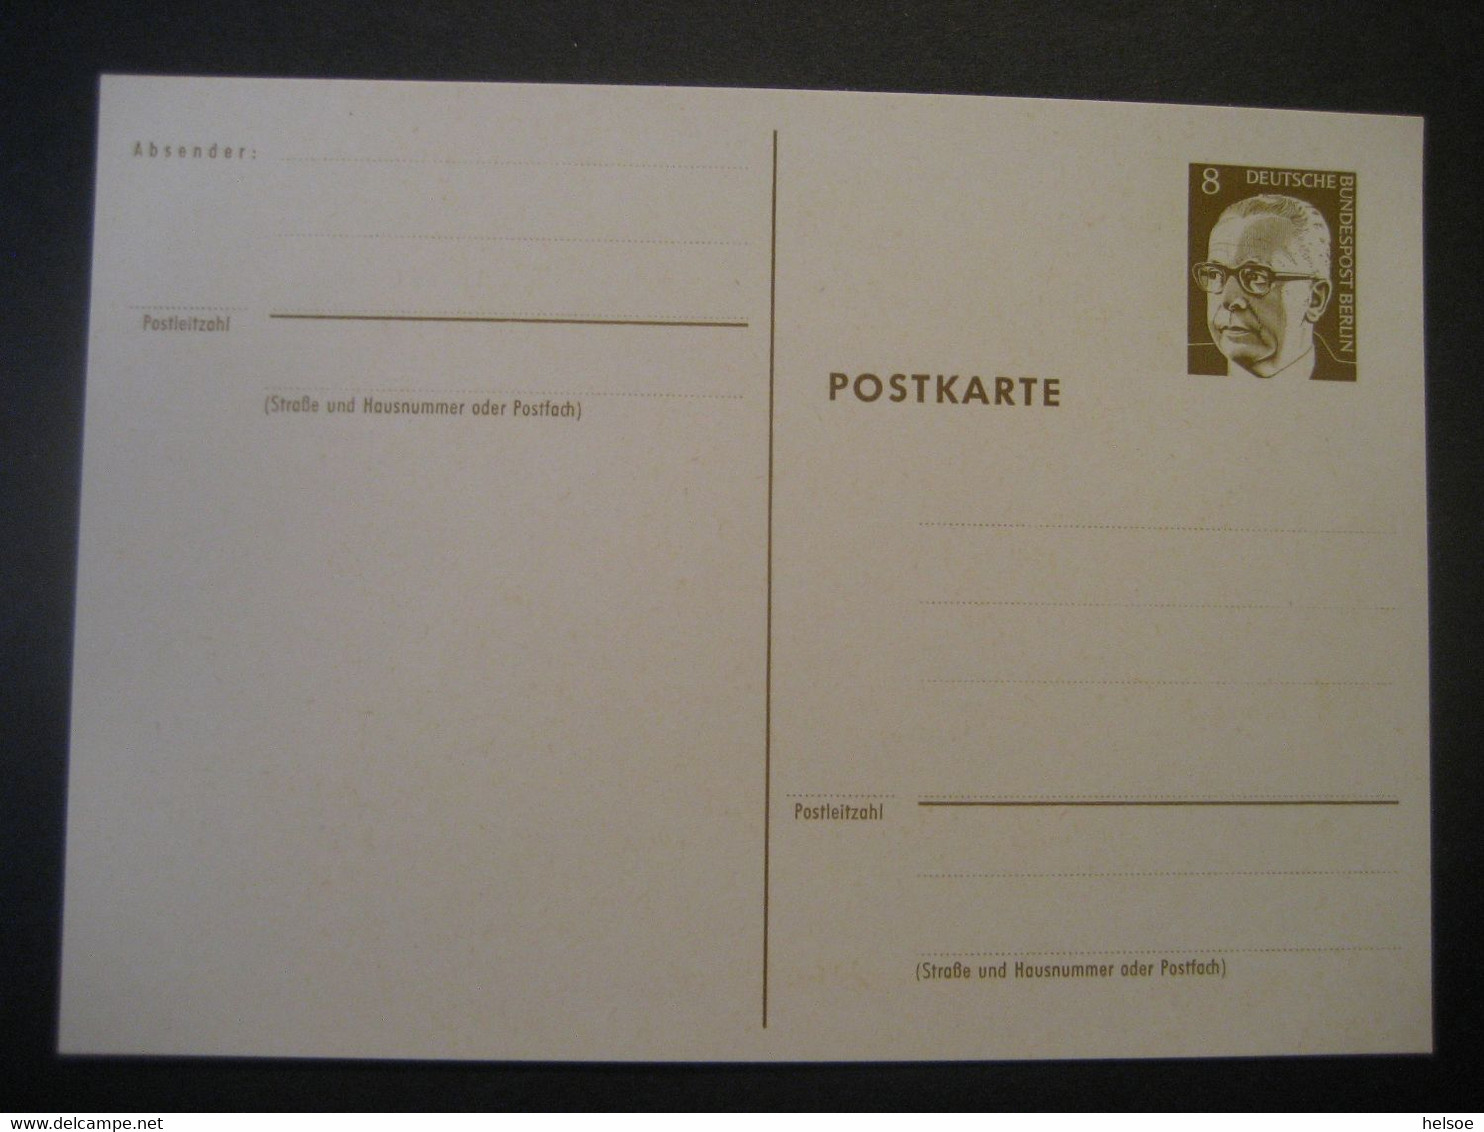 Deutschland Berlin 1972- Ganzsache Postkarte Gustav Heinemann Ungebraucht MiNr. P 80 - Postcards - Mint